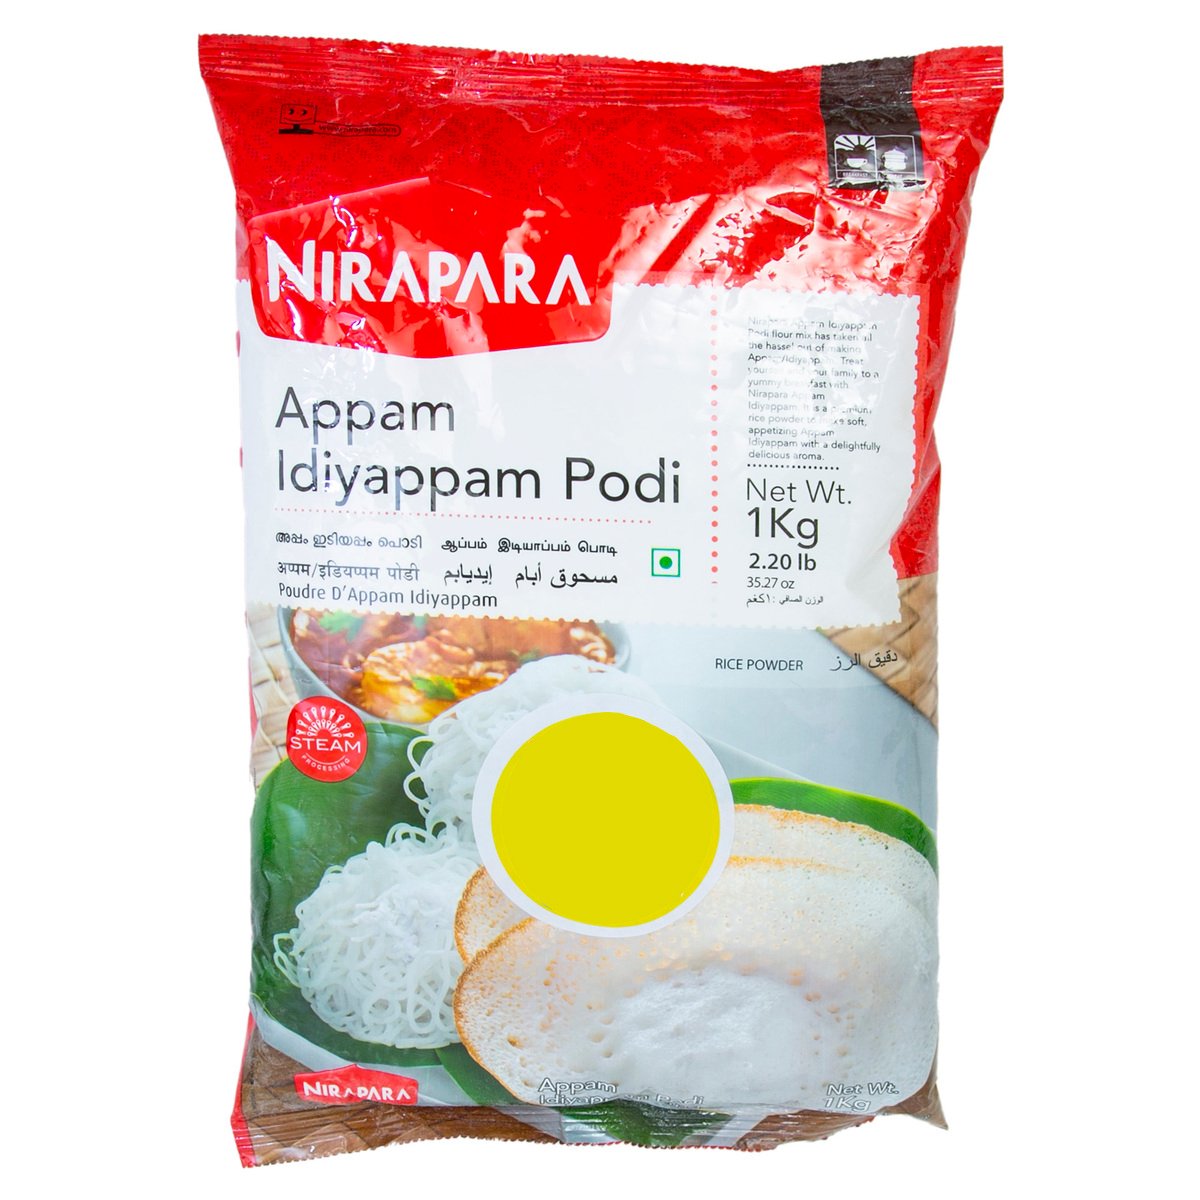 Nirapara Appam Idiyappam Podi 1 kg